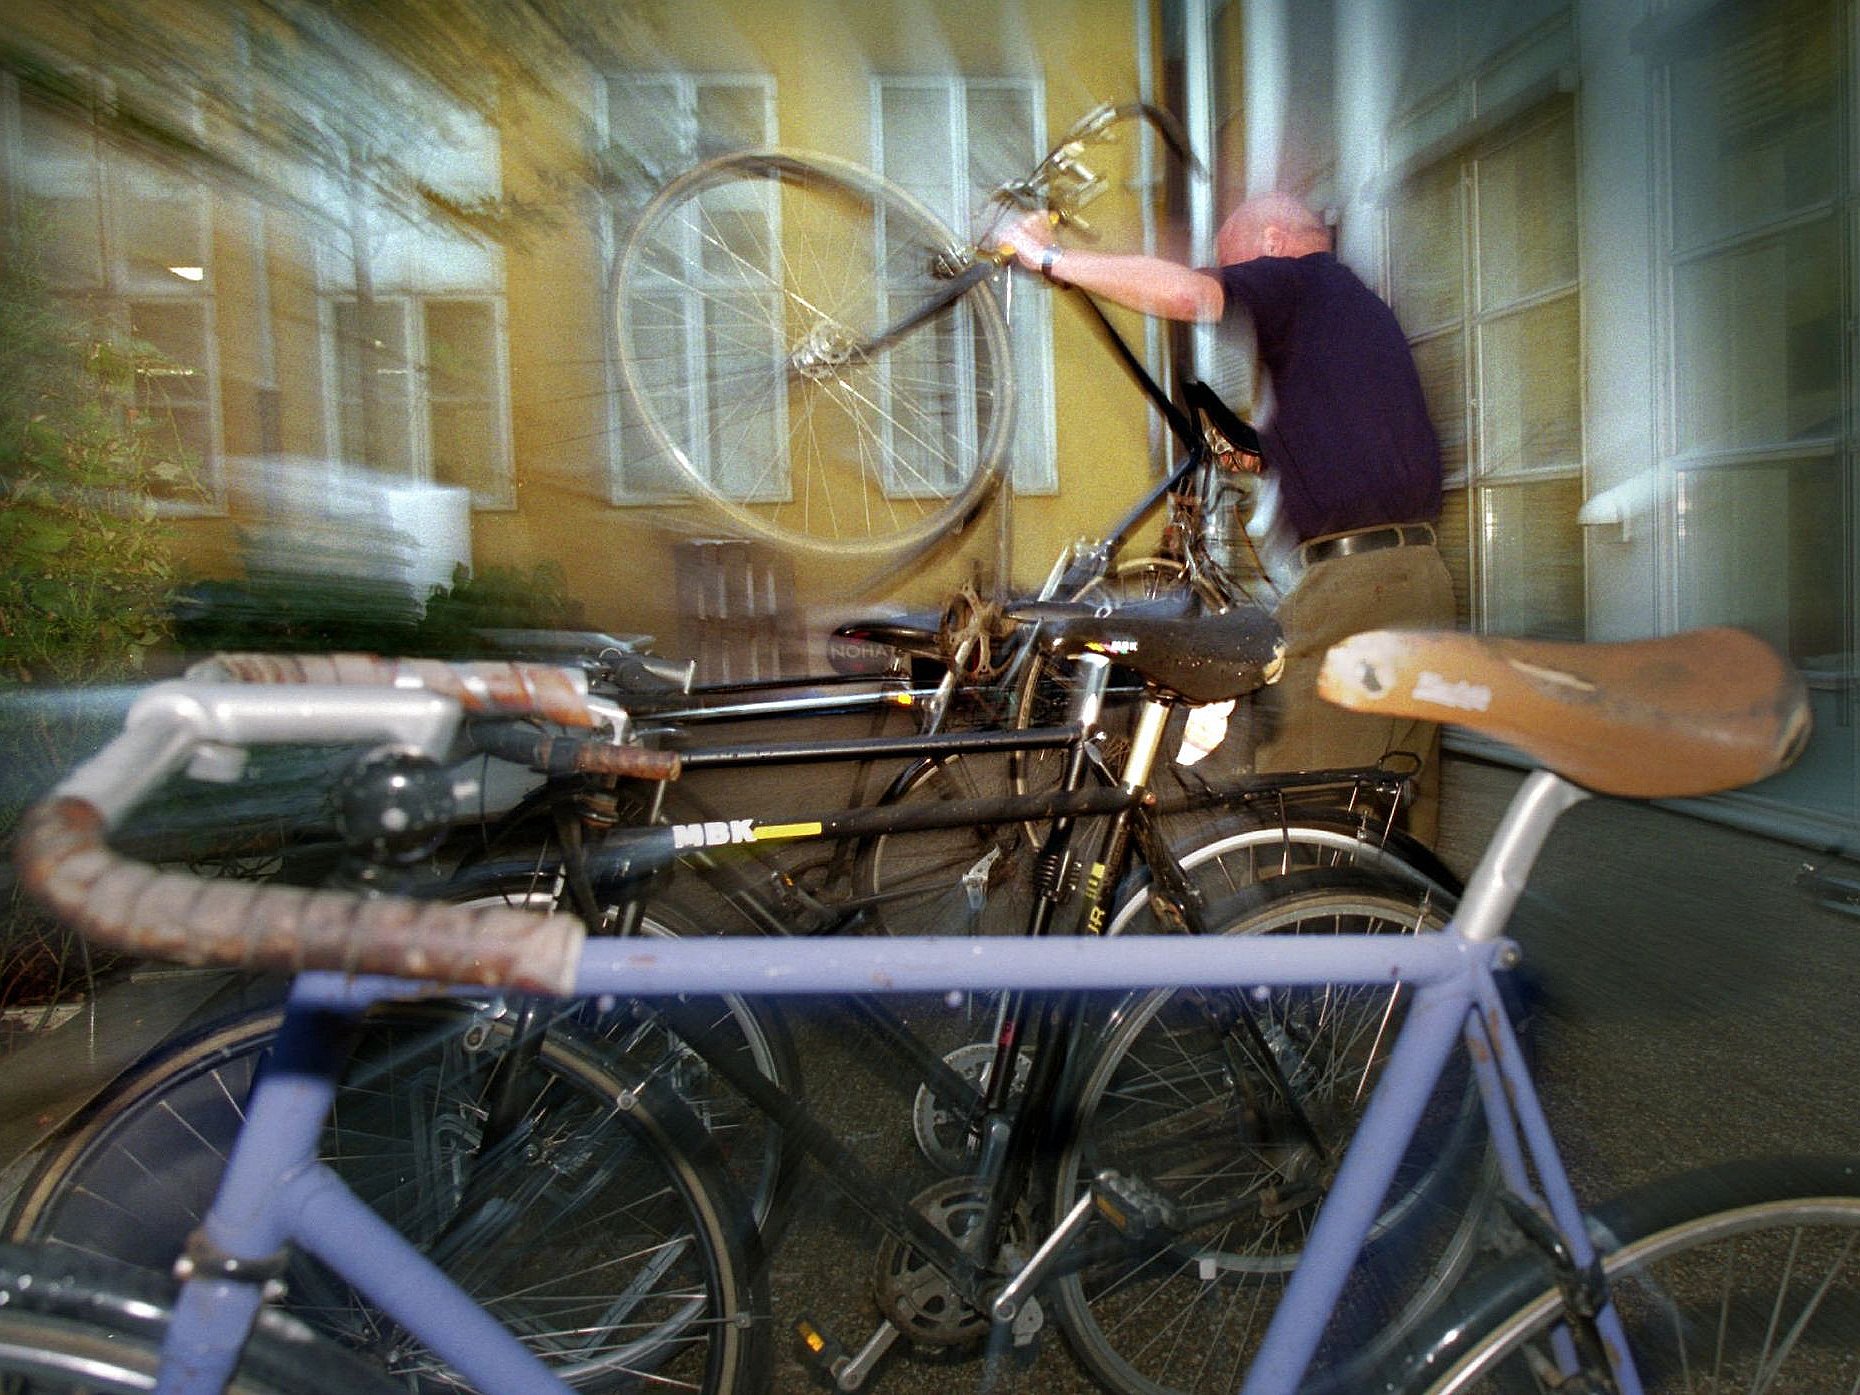 Lionel Green Street Næb Klæbrig Ny udvikling: Tyve stjæler færre men dyrere cykler | TV 2 Kosmopol